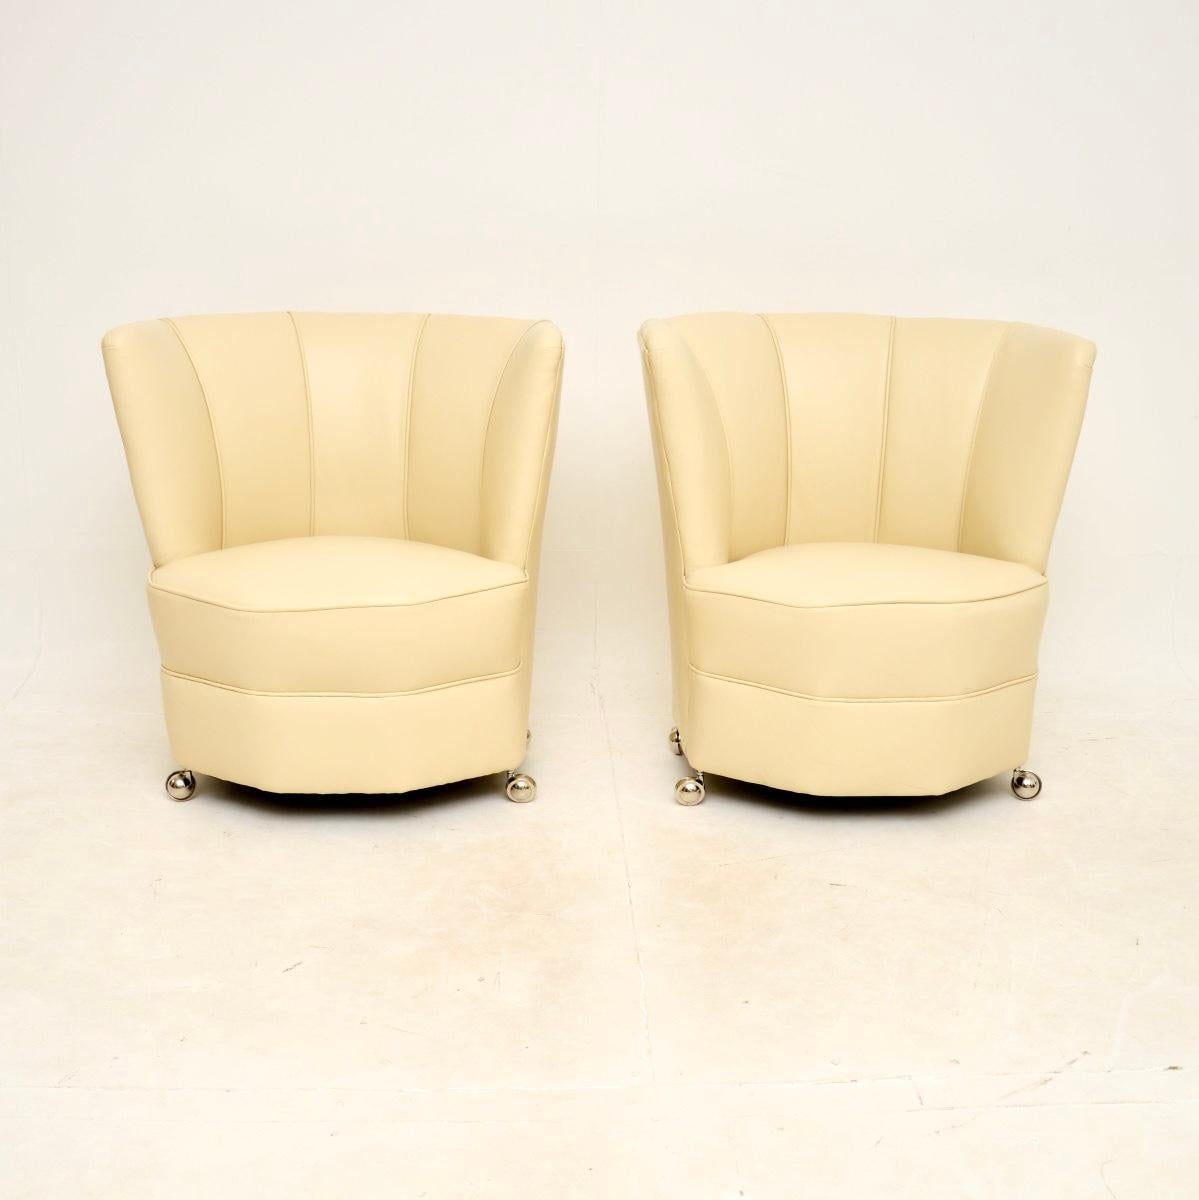 Une superbe paire de fauteuils Art Déco en cuir, fabriqués en Angleterre et datant des années 1920-30.

Ils sont d'une qualité exceptionnelle et d'une taille adorable. Elles conviendraient parfaitement comme chaises de chambre à coucher ou comme